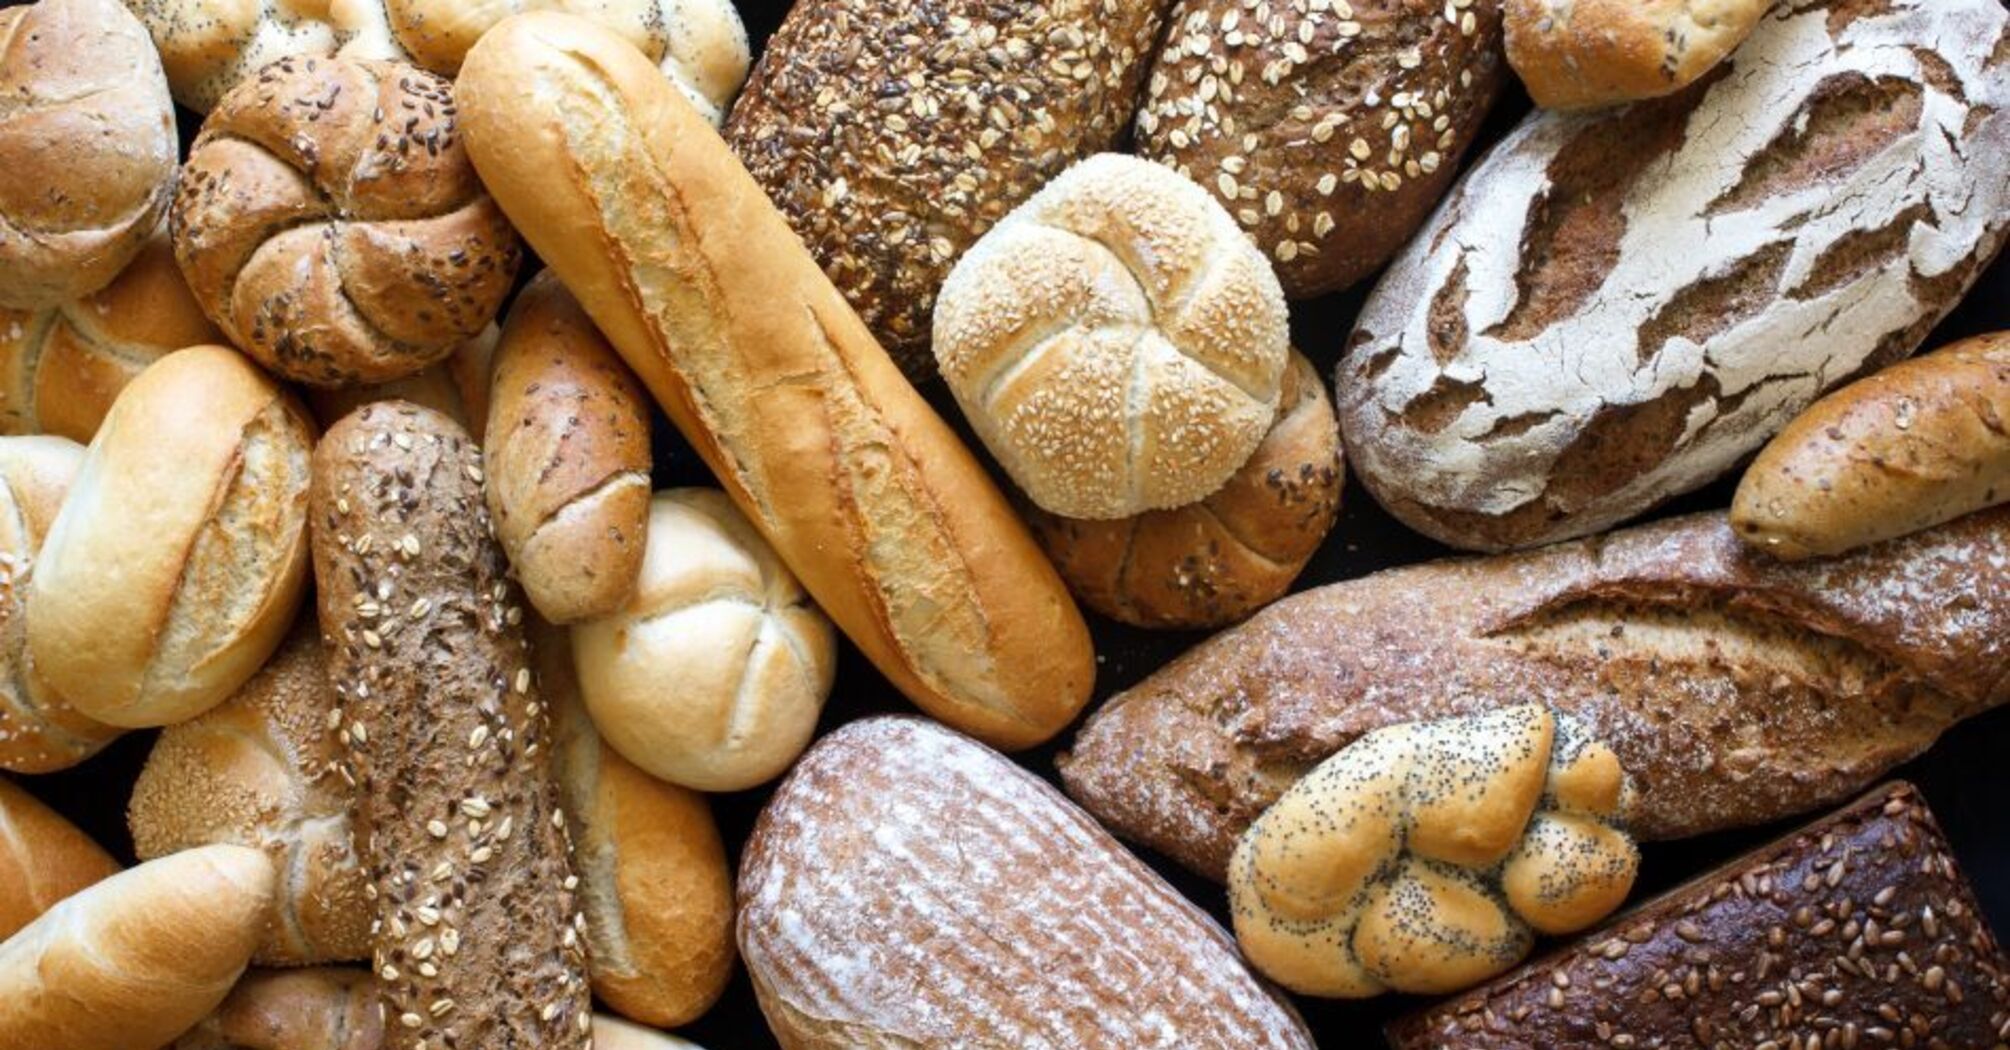 Maintaining Bread Freshness